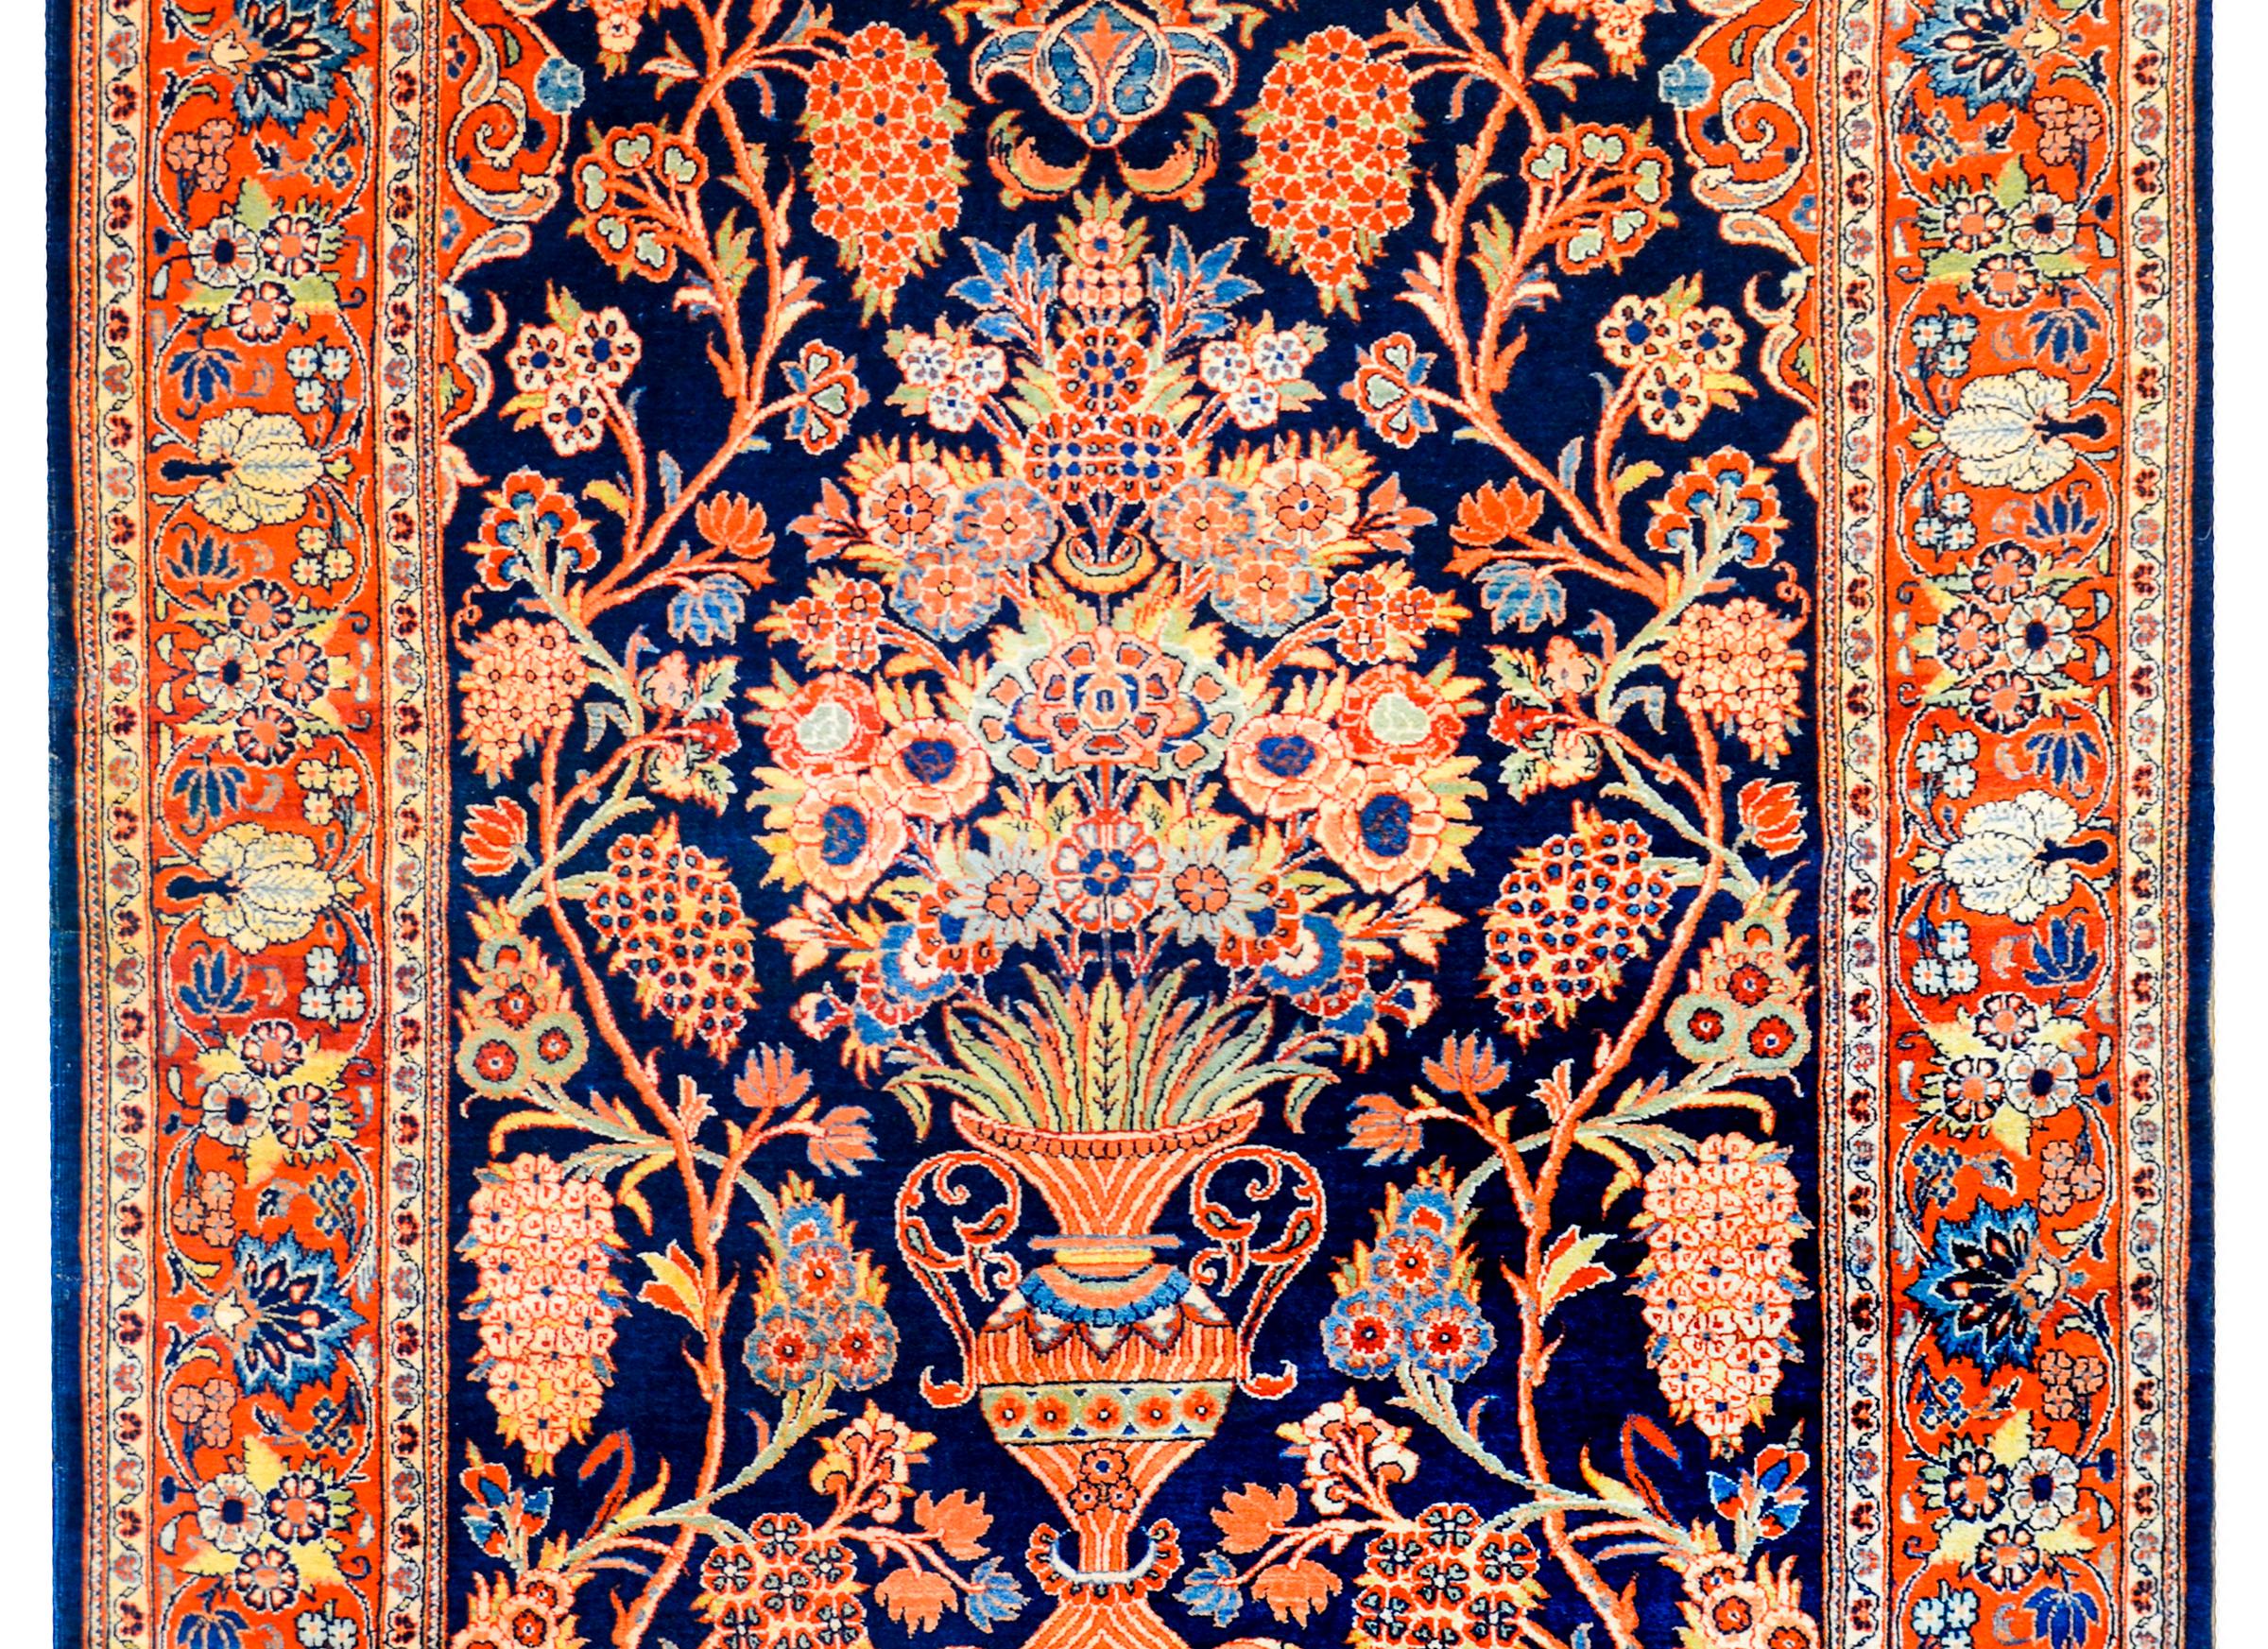 Ein prächtiger persischer Kaschan-Gebetsteppich aus dem frühen 20. Jahrhundert mit einer wunderschönen zentralen Vase, die mit einem überlebensgroßen Lebensbaum-Muster aus mehrfarbiger, pflanzlich gefärbter Wolle auf einem tief indigoblauen